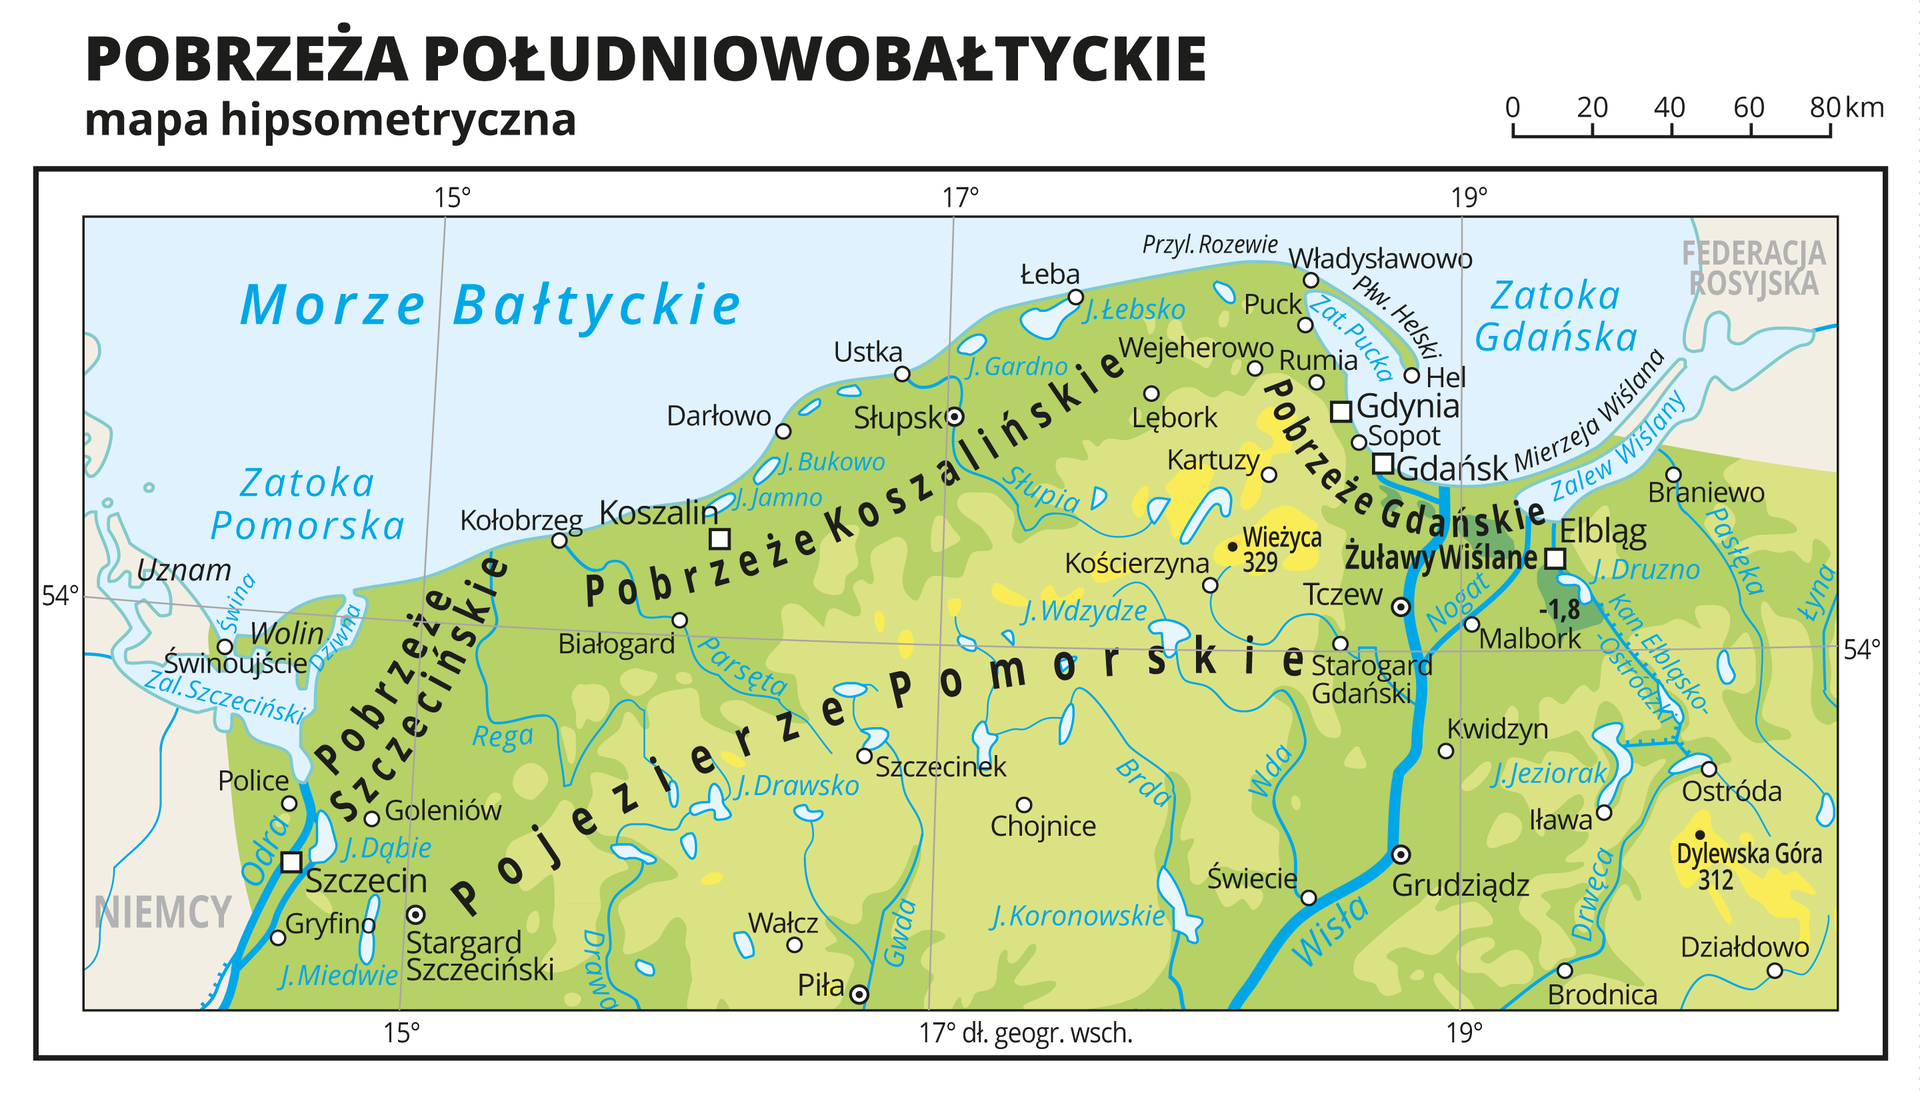 Ilustracja przedstawia mapę hipsometryczną Pobrzeży Południowobałtyckich na terenie Polski. Na mapie dominuje kolor zielony oznaczający niziny. Oznaczono i opisano miasta, rzeki, jeziora i szczyty. Opisano pobrzeża i pojezierza, morze, zatoki i wyspy. Opisano państwa sąsiadujące z Polską. Dookoła mapy w białej ramce opisano współrzędne geograficzne co dwa stopnie.